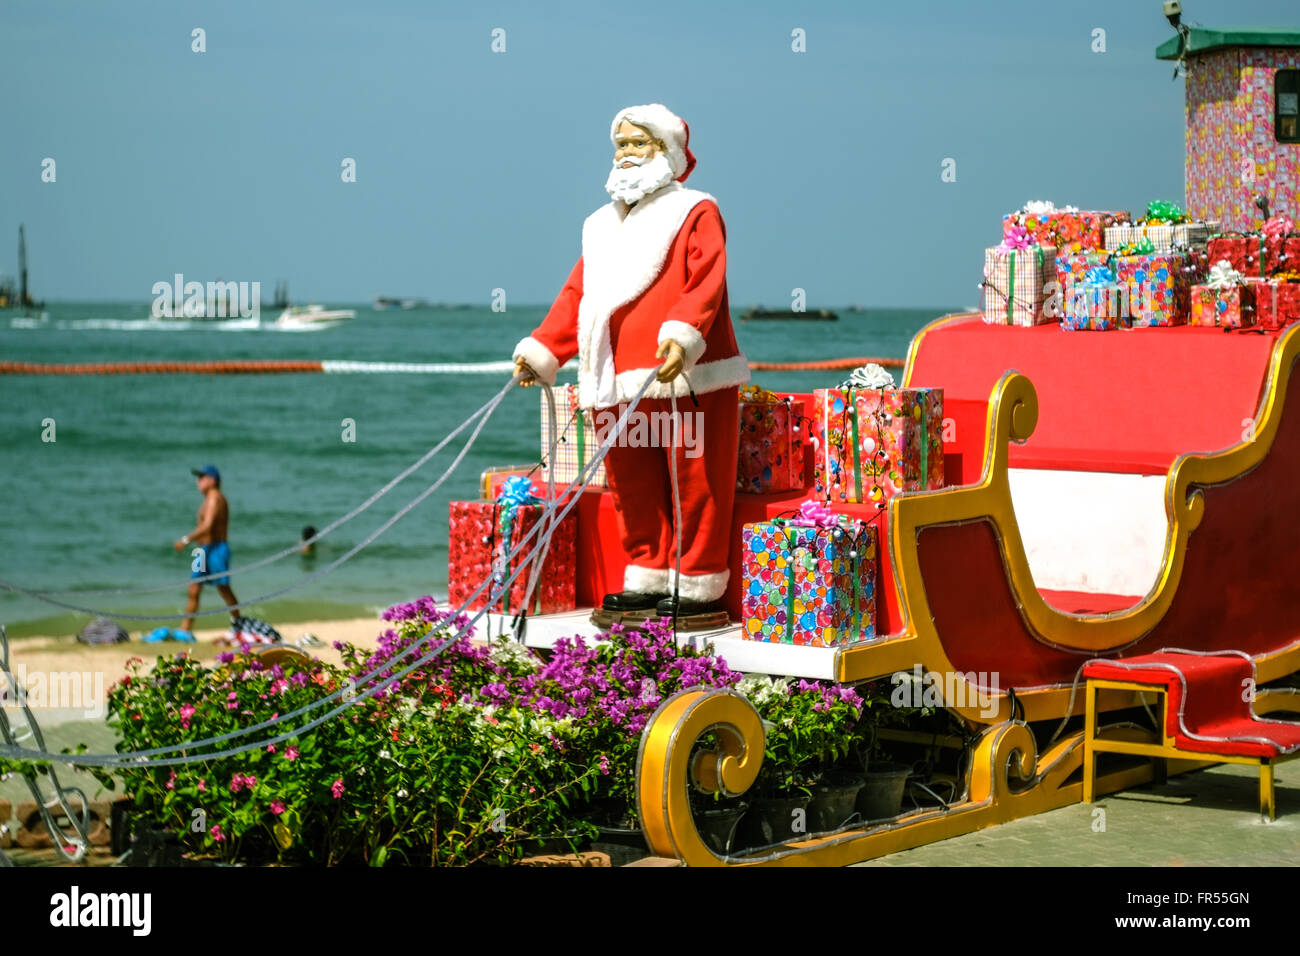 Santa's vacaciones de verano Foto de stock